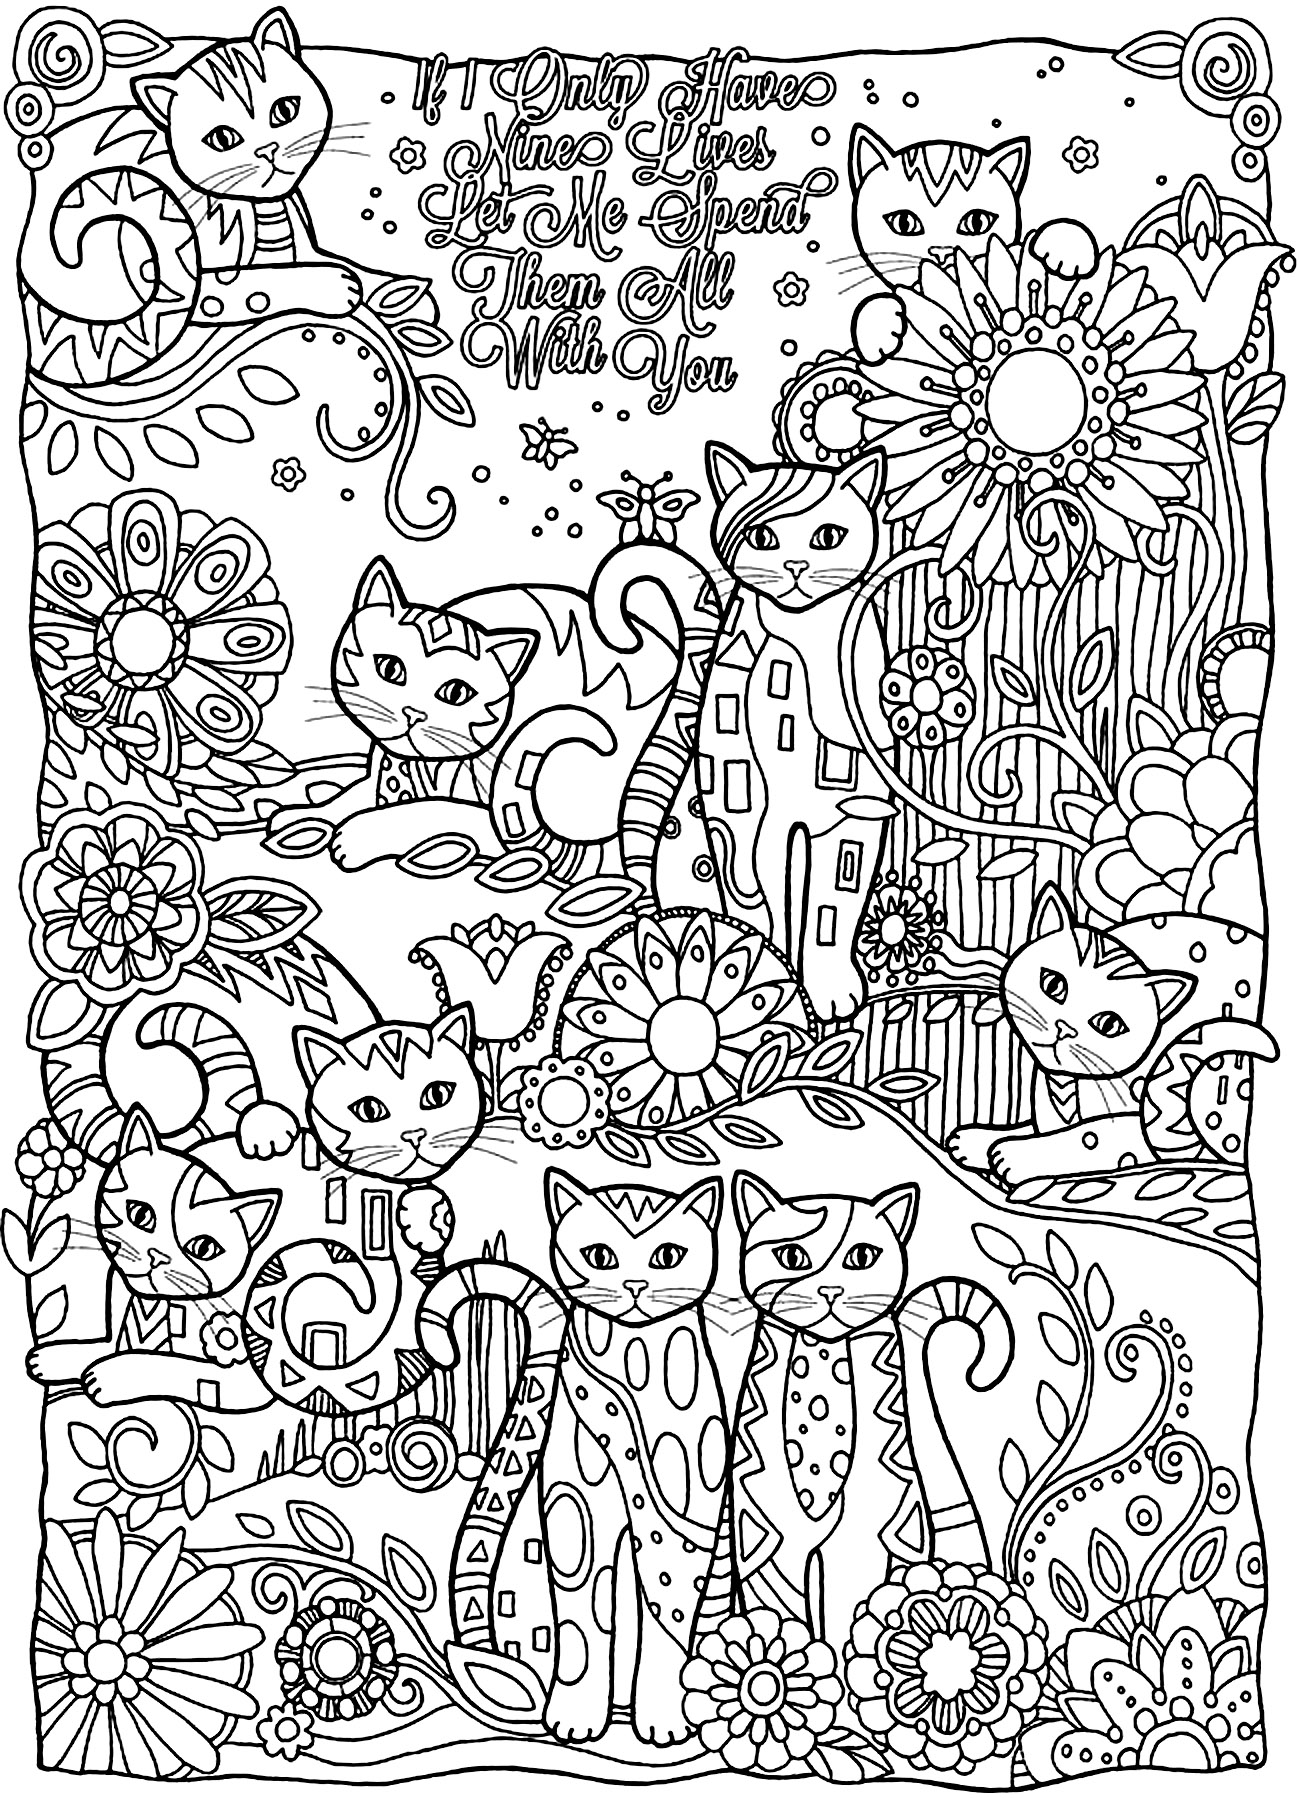 Desenhos para colorir para crianças de Gatos para imprimir